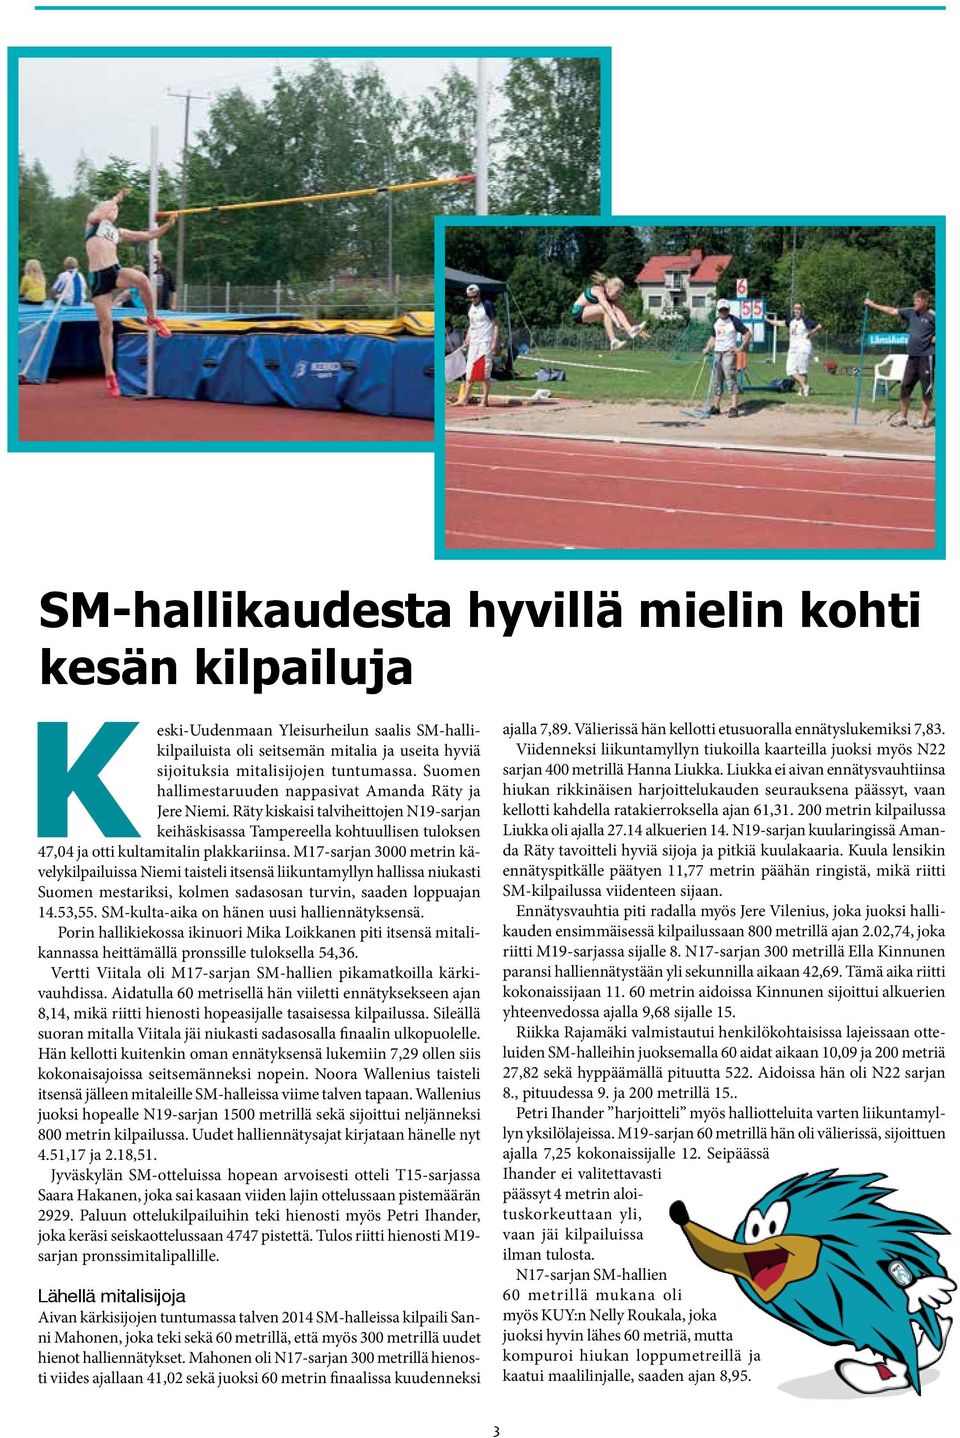 M17-sarjan 3000 metrin kävelykilpailuissa Niemi taisteli itsensä liikuntamyllyn hallissa niukasti Suomen mestariksi, kolmen sadasosan turvin, saaden loppuajan 14.53,55.